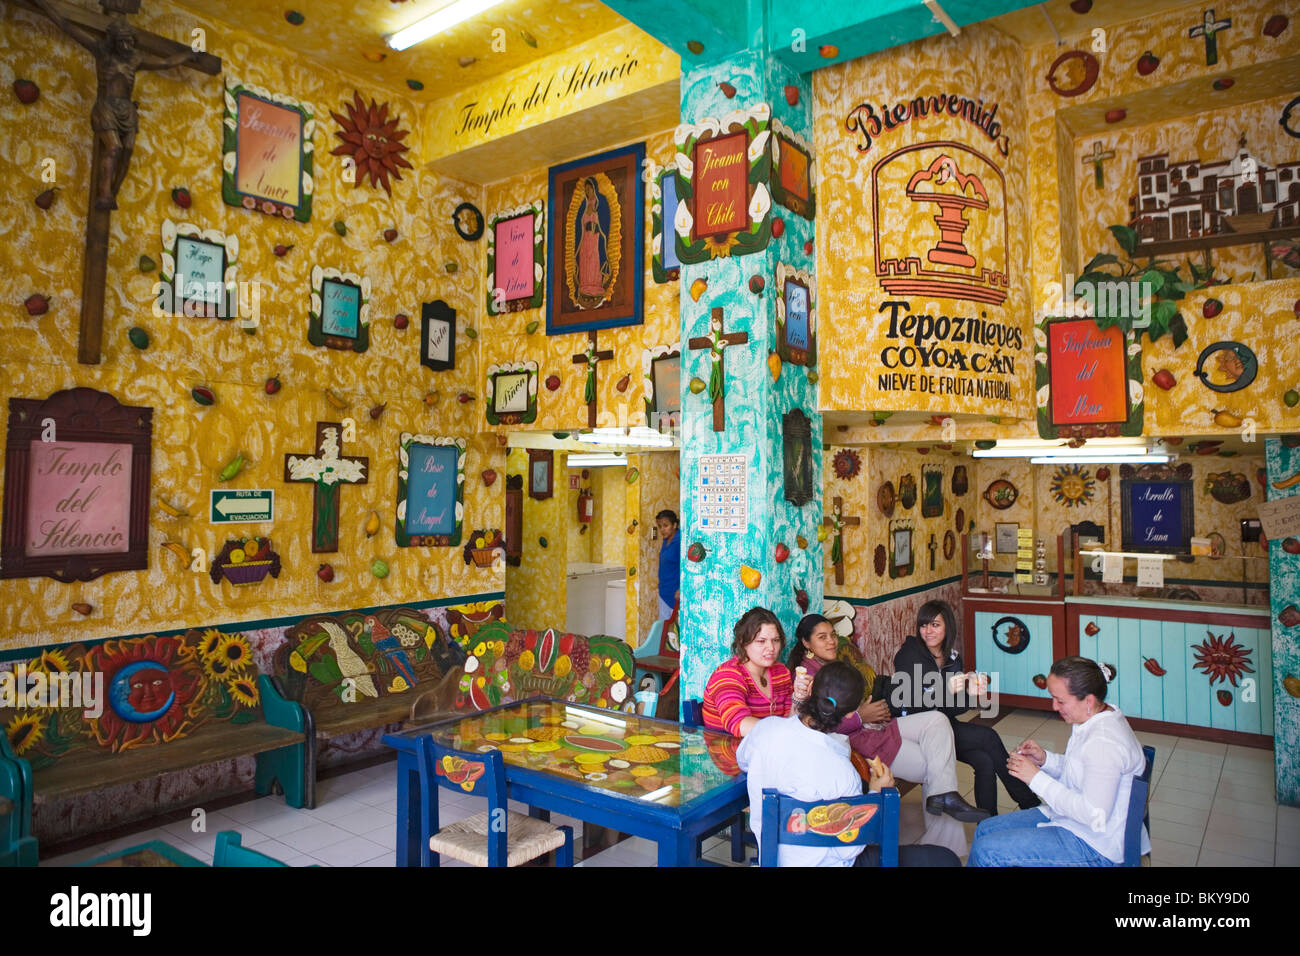 Cafe Templo del Silencio, Coyoacan district, Mexico City, Mexico D.F., Mexico Stock Photo